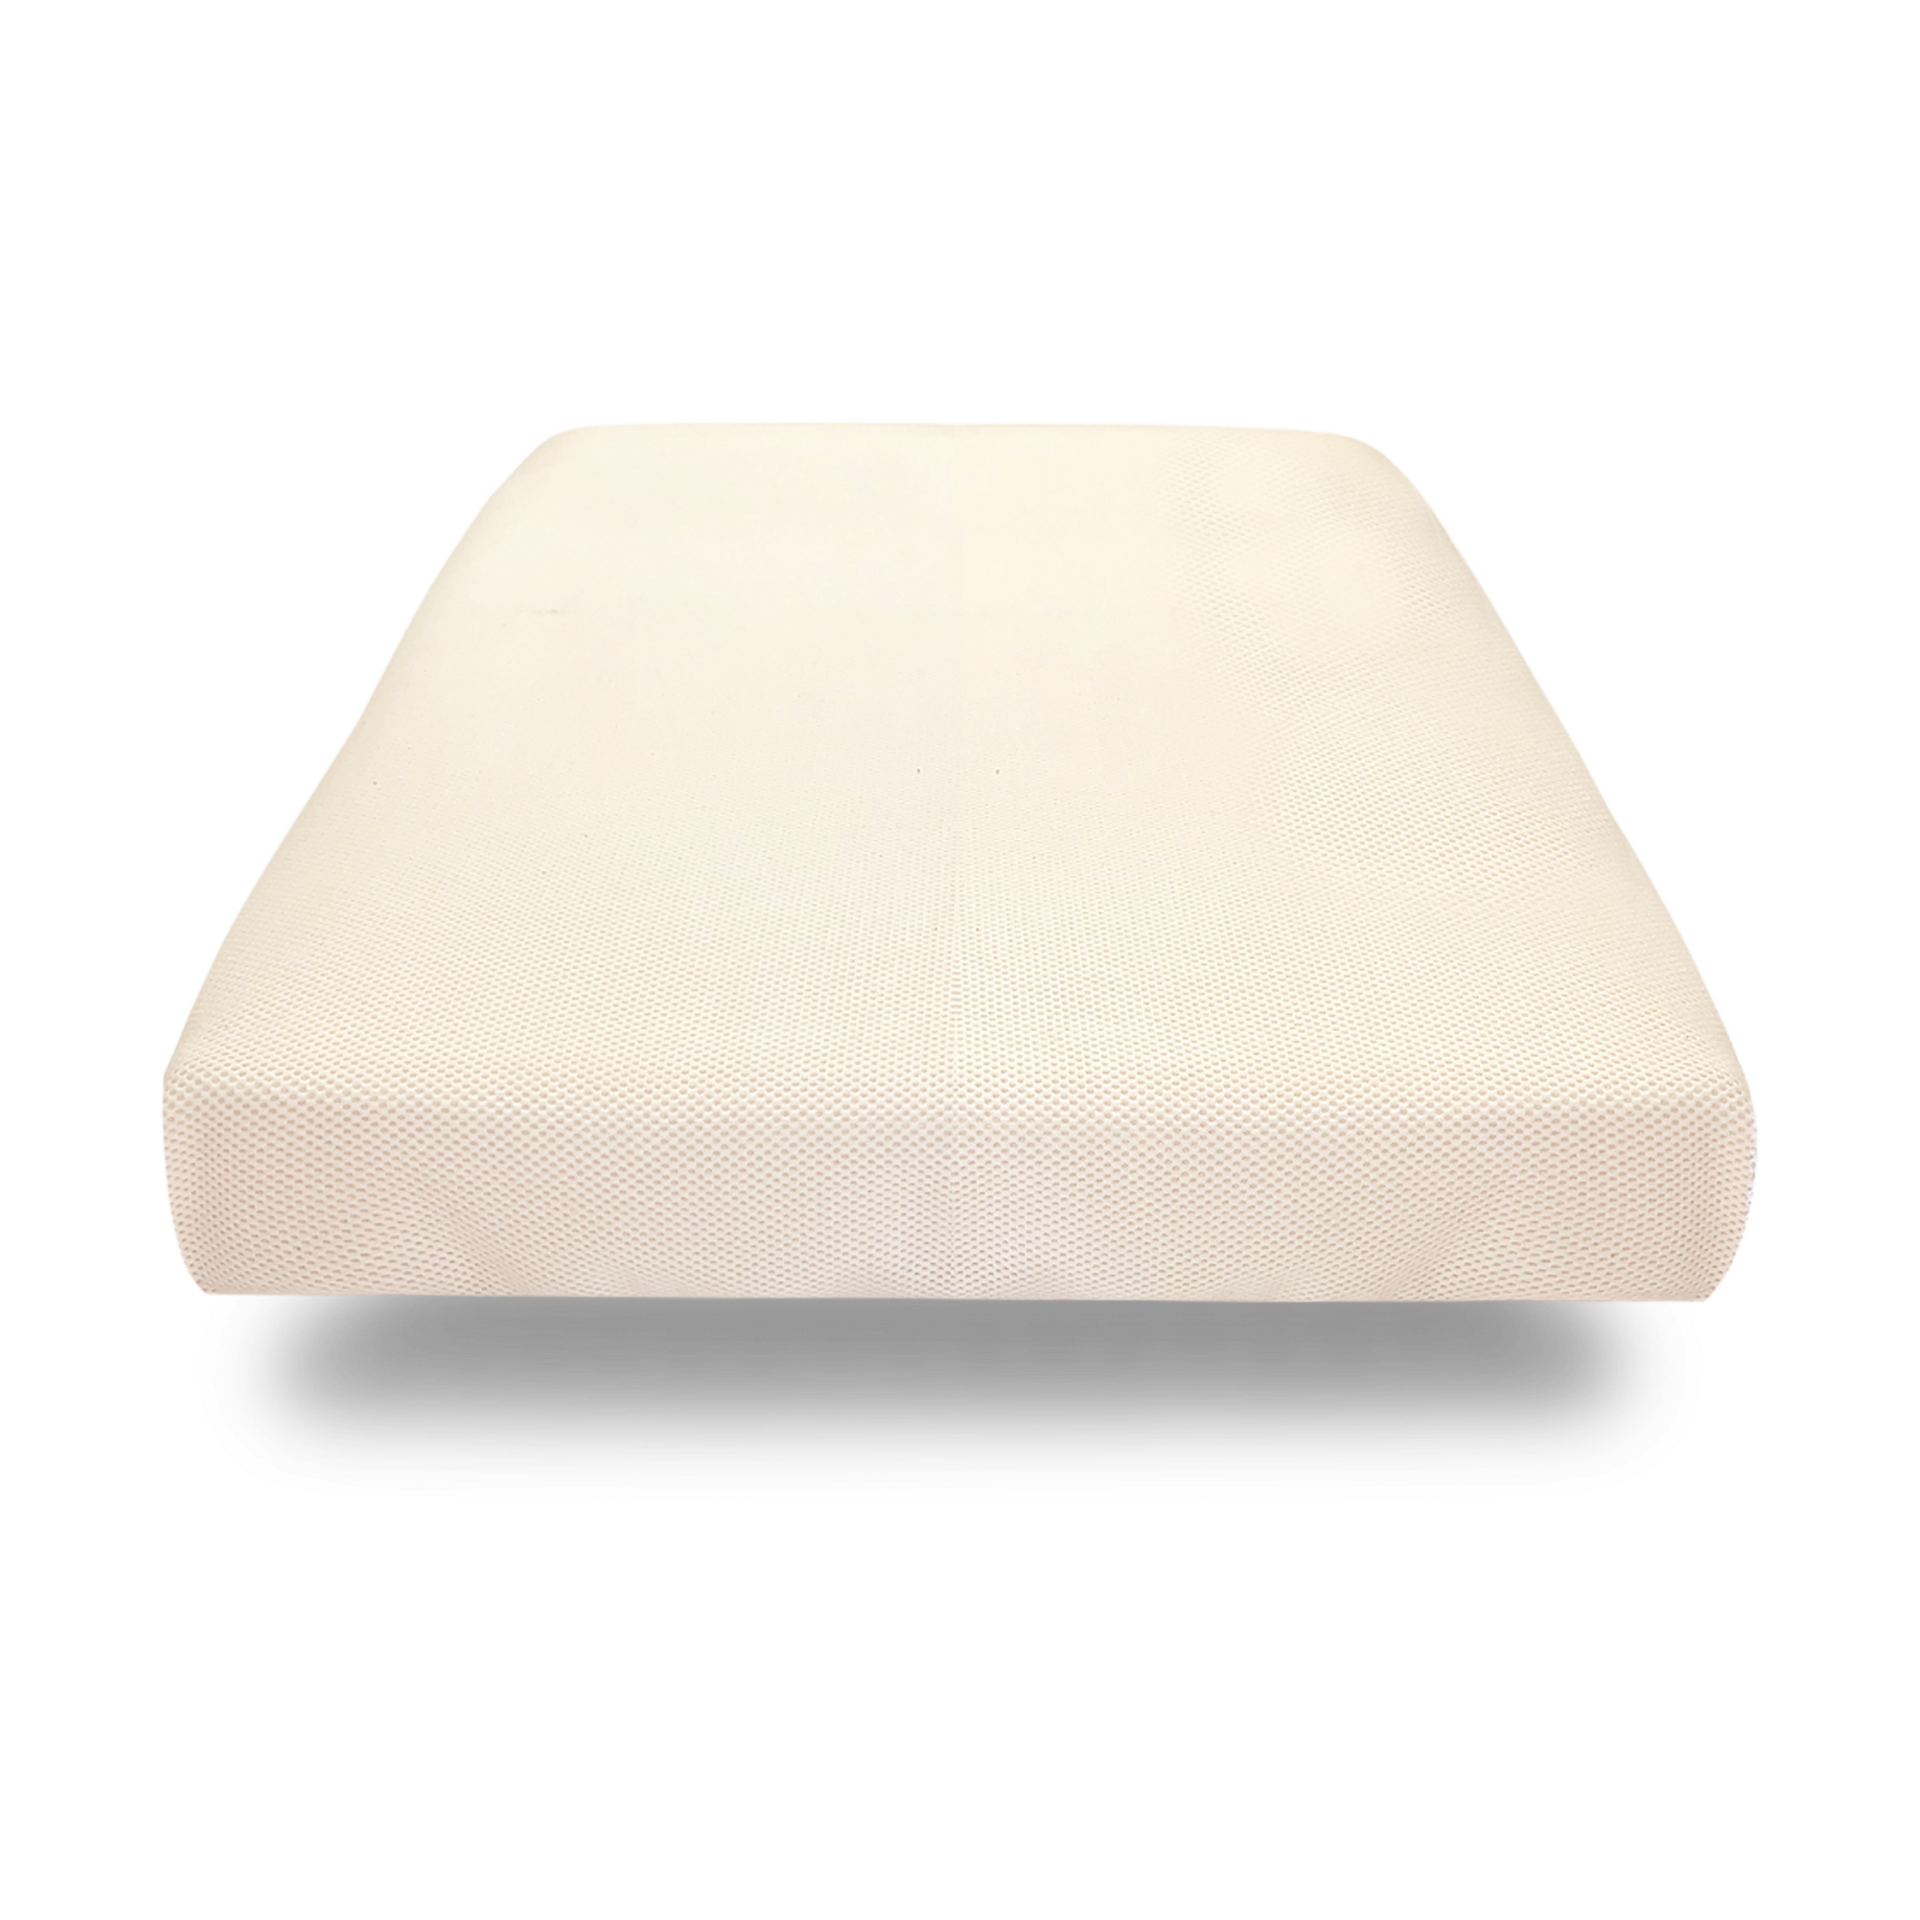 mini crib foam mattress